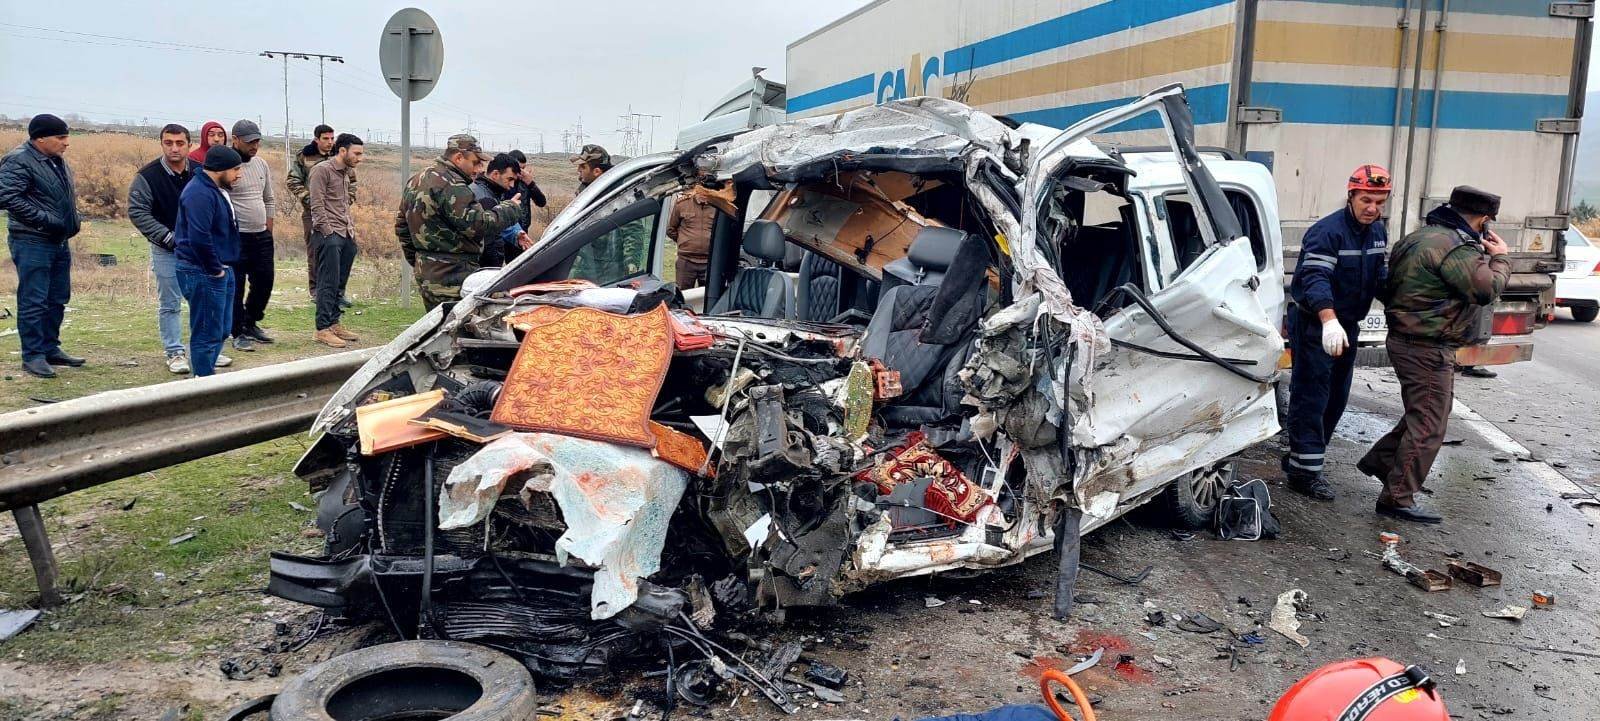 Bakı-Quba yolunda DƏHŞƏTLİ QƏZA - 6 nəfər öldü - FOTO - YENİLƏNİB